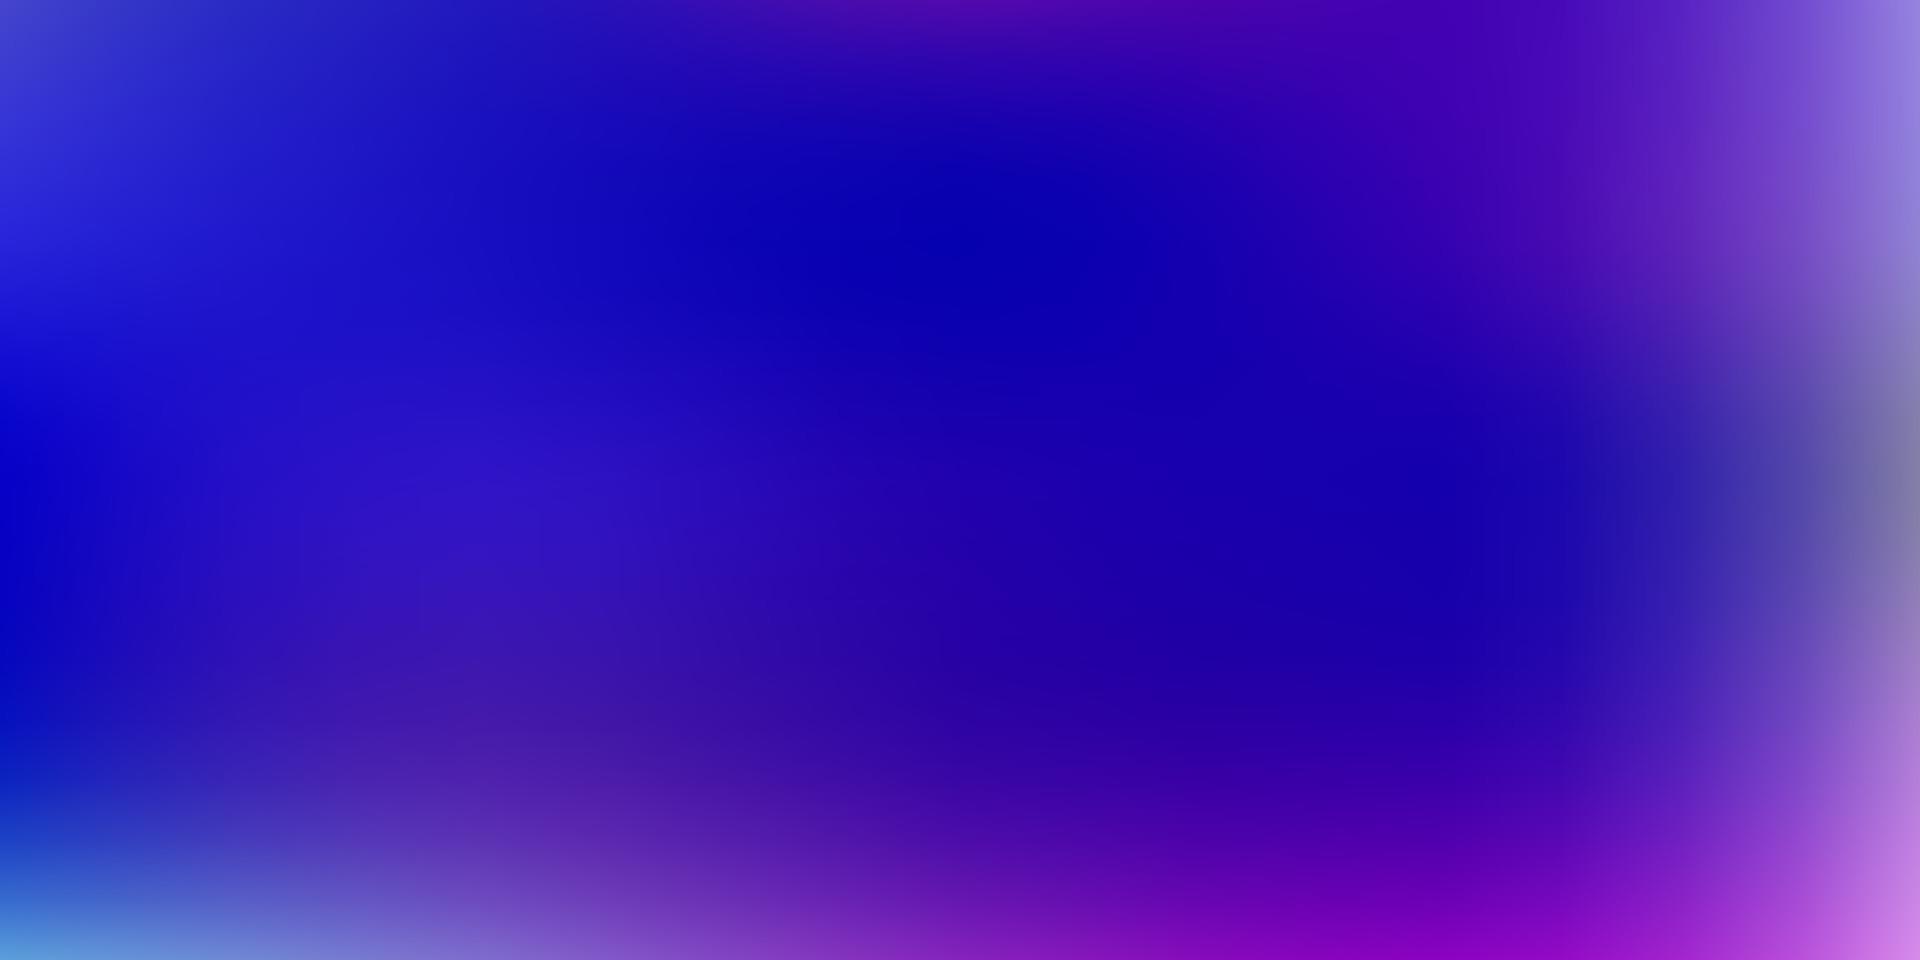 textura de desenfoque degradado vector rosa claro, azul.